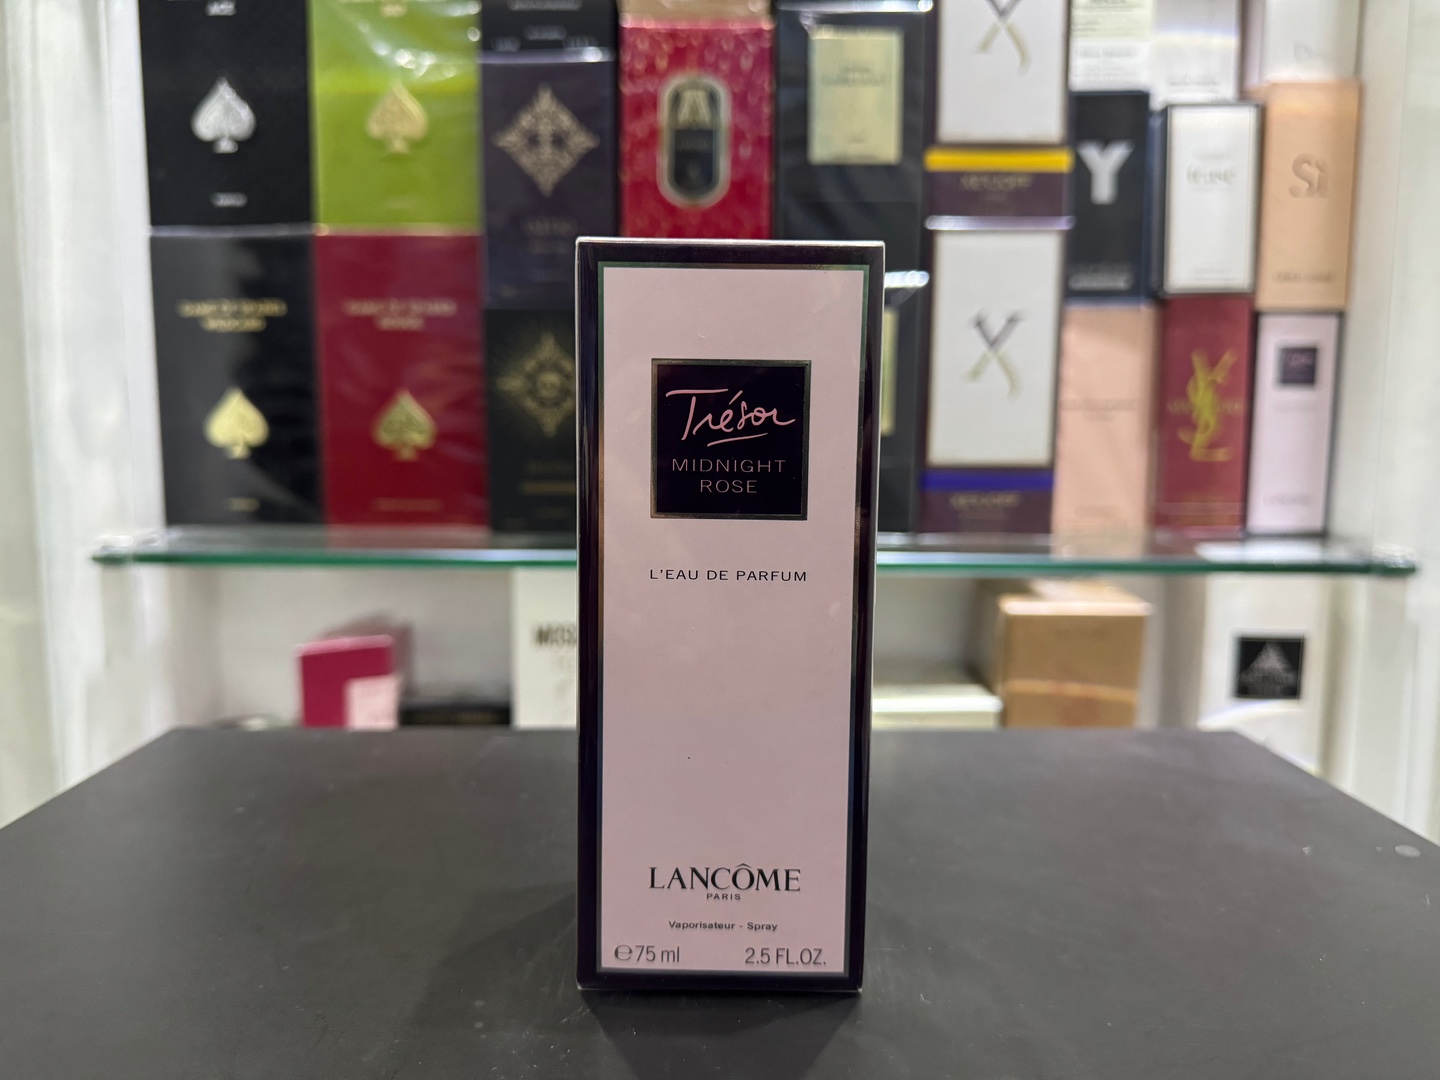 joyas, relojes y accesorios - Perfume Tréson Midnight Rose Lancôme 75ml Nuevo,100% Originales, RD$ 5,500 NEG